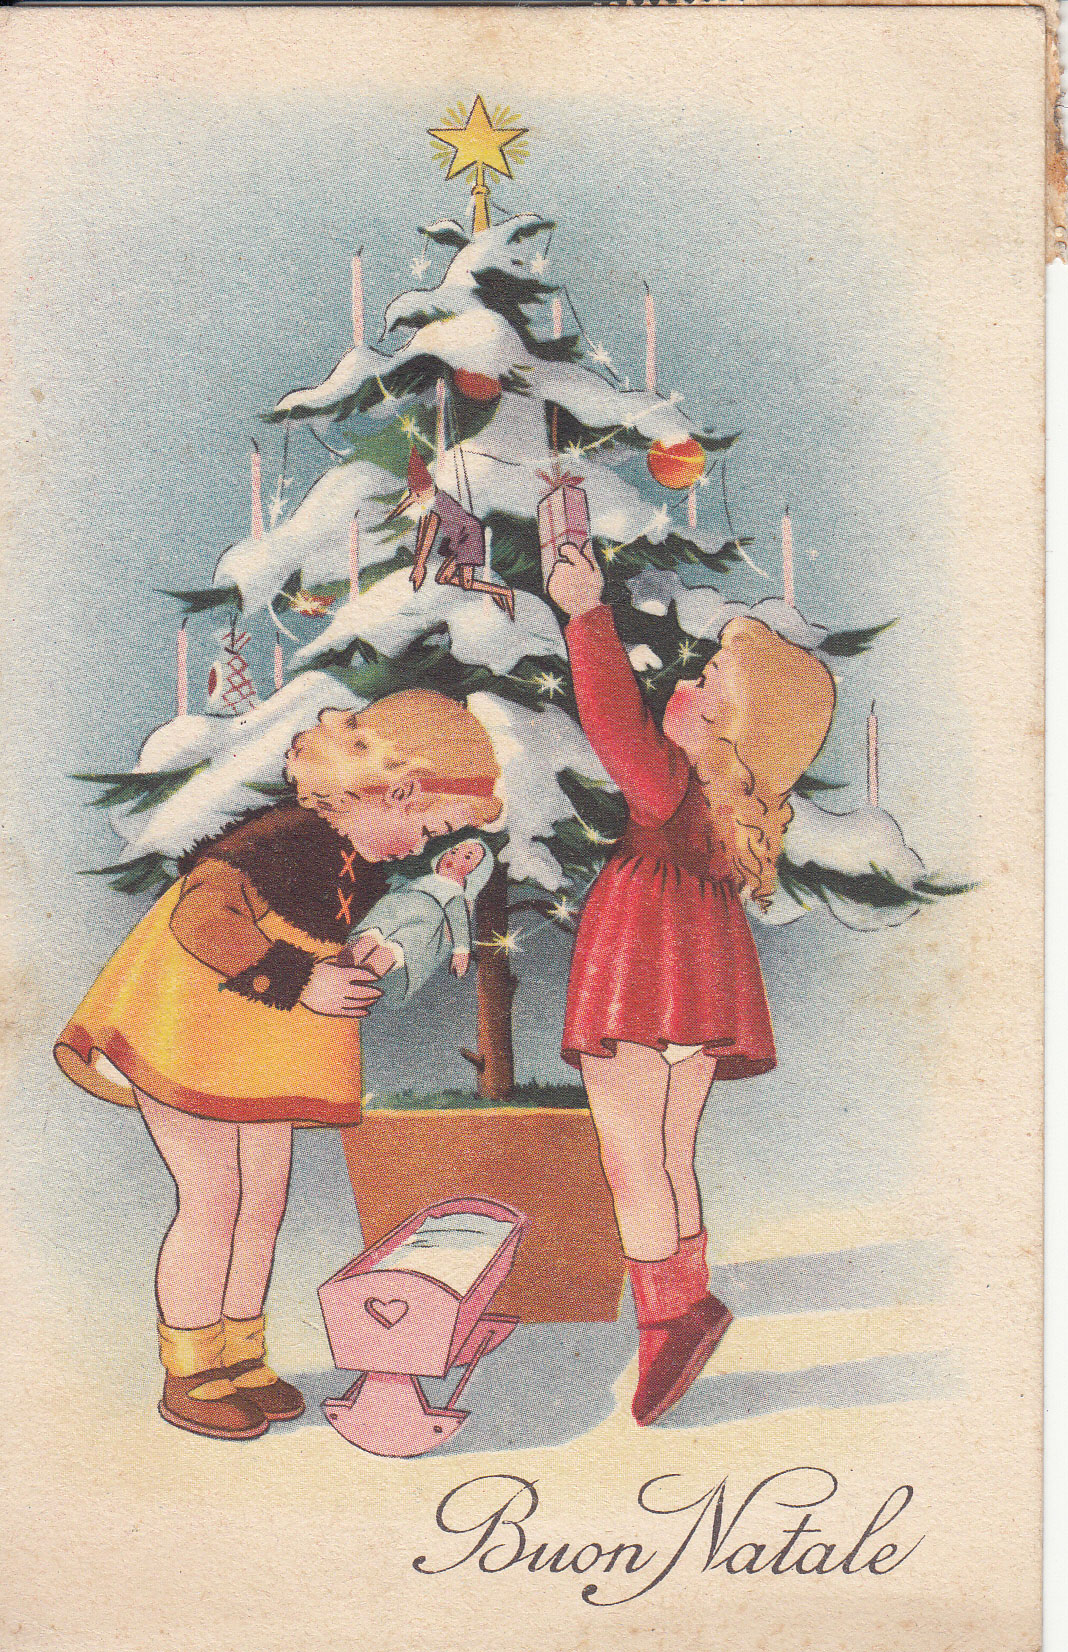 Poesie Di Natale Anni 50.Vecchie Cartoline E Letterine Natalizie Al Barnardon